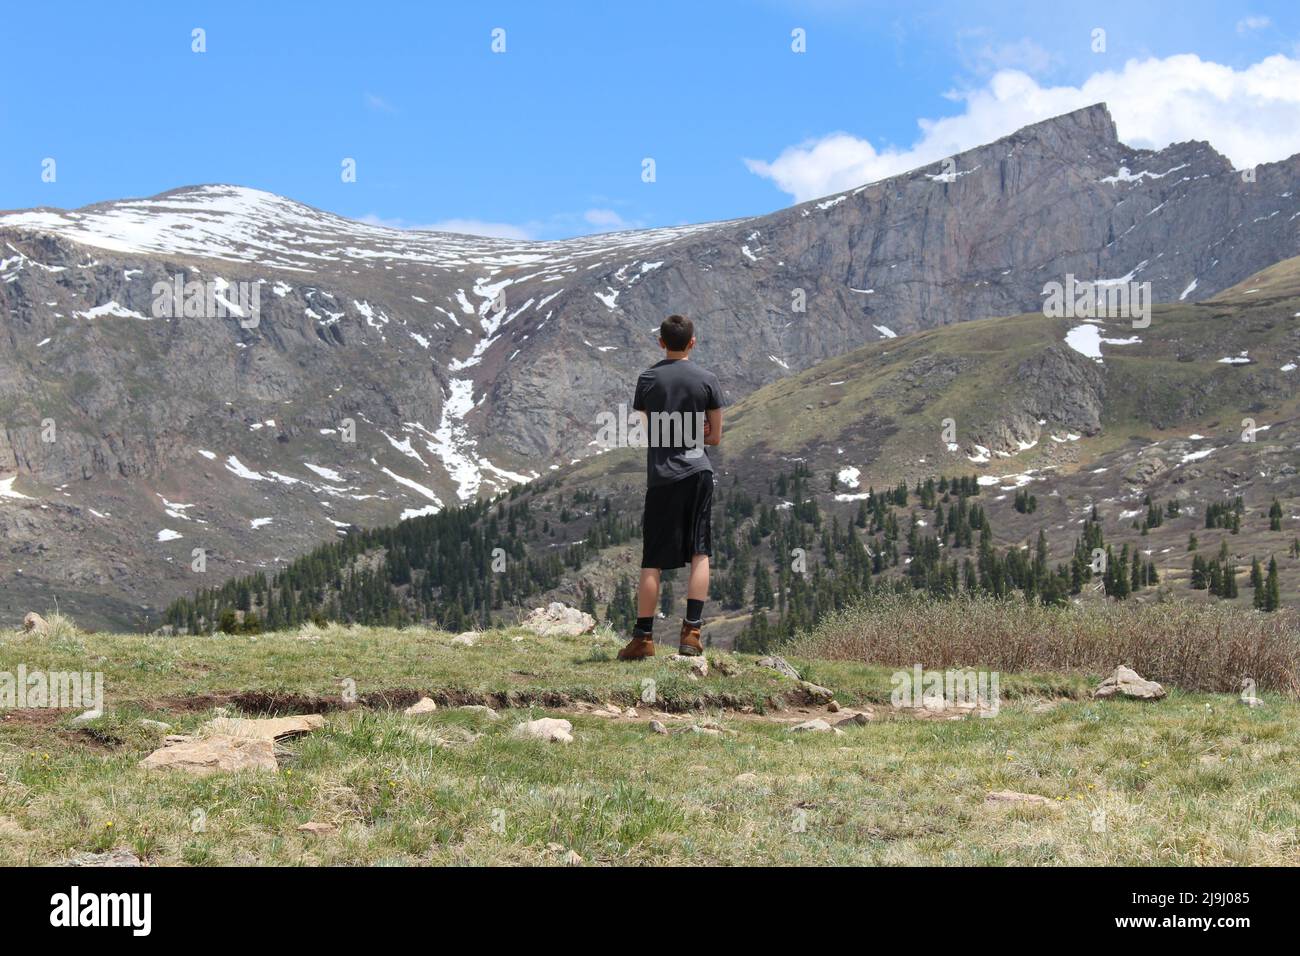 Mt Evans Wilderness am Fuße des Mount Bierstadt, einem 14.065 Meter hohen Berggipfel im Front Range der Rocky Mountains Stockfoto